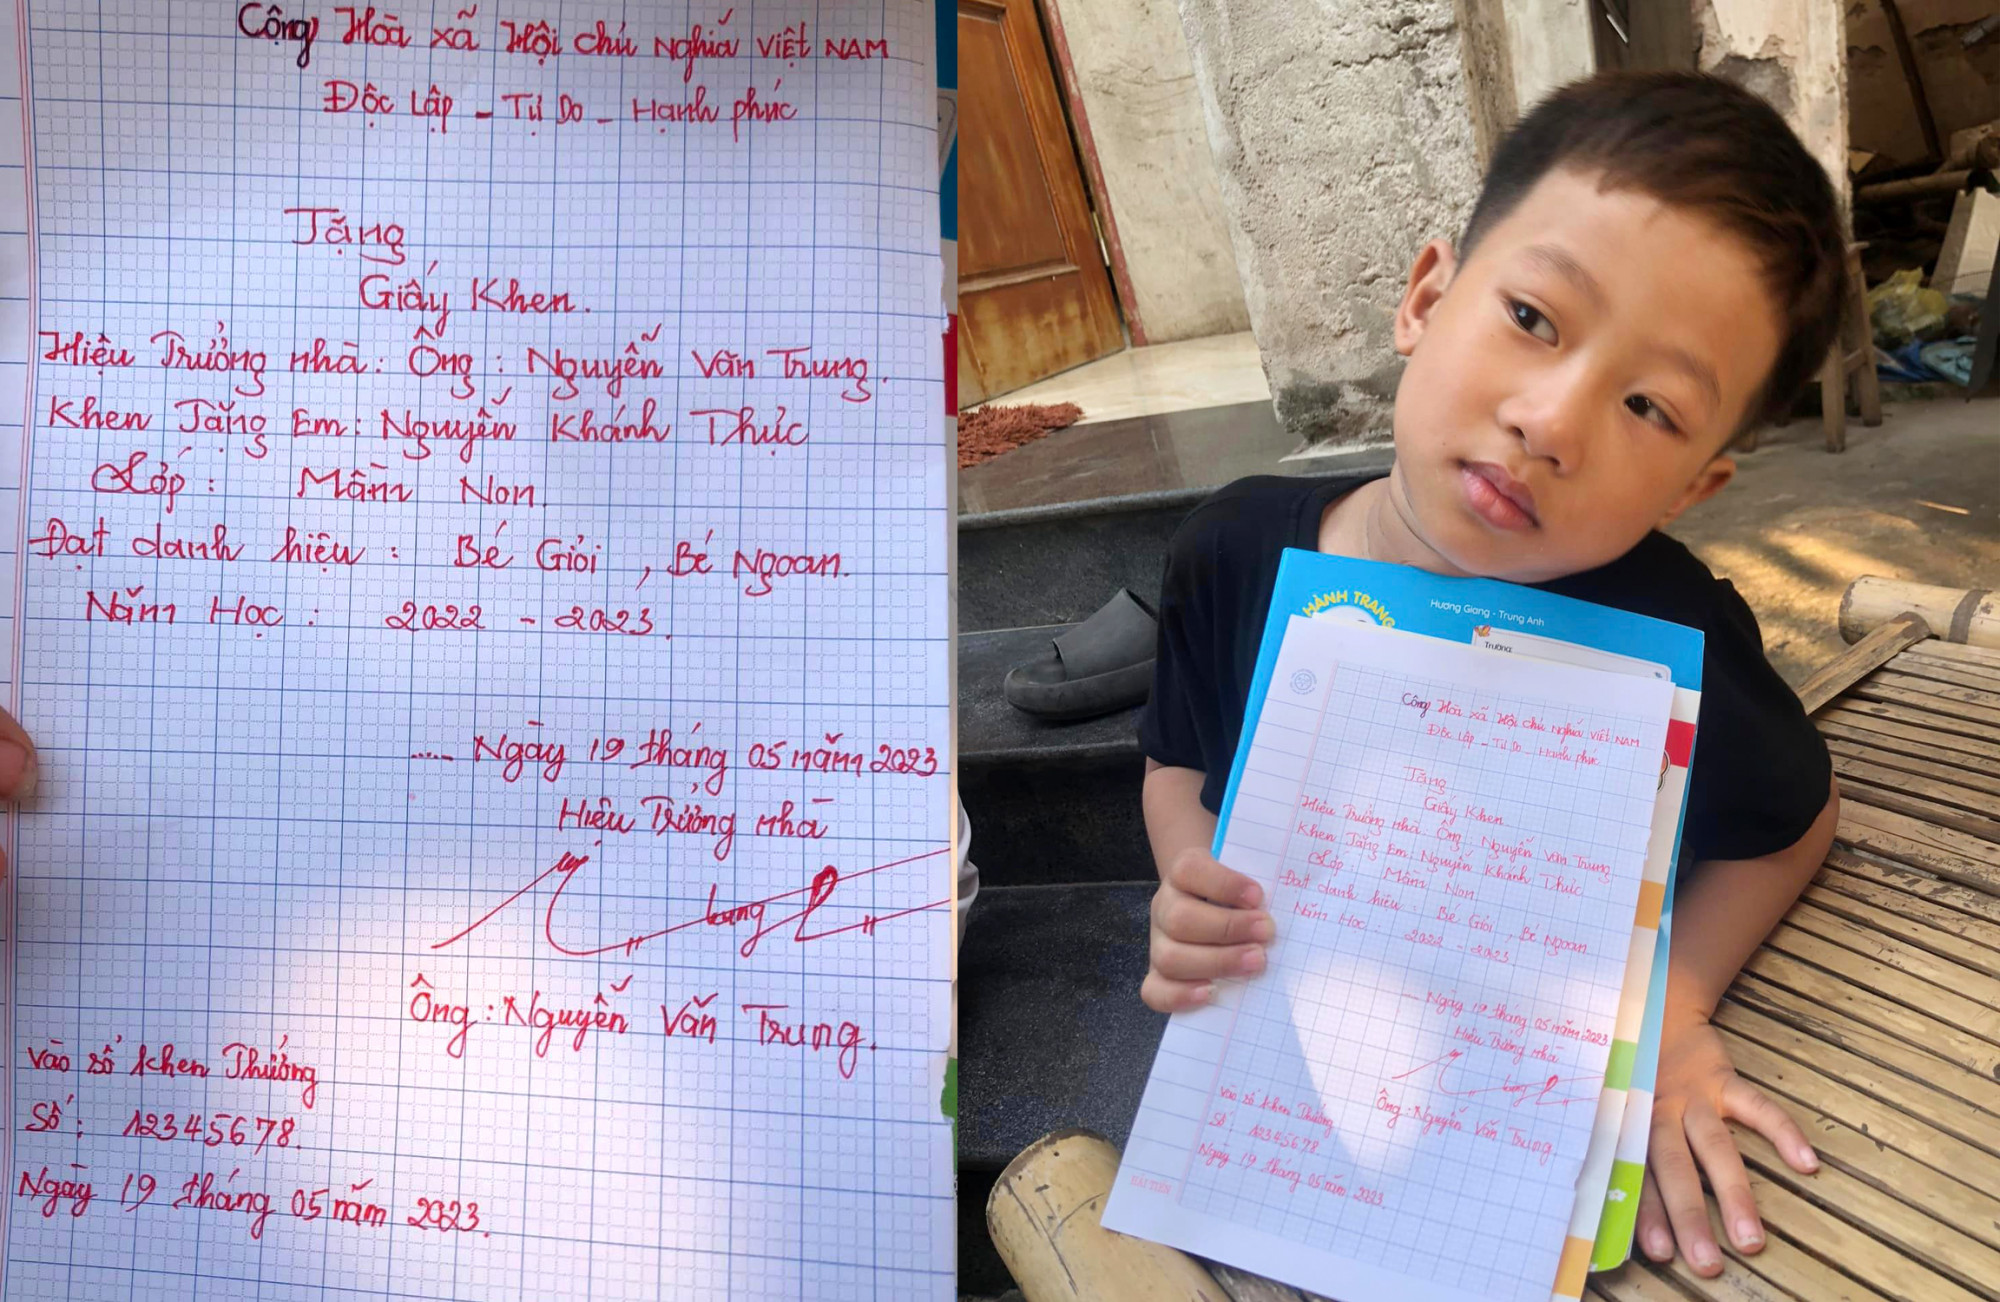 Cậu bé 5 tuổi khoe tờ giấy khen đặc biệt do người cha tặng - Ảnh: Nguyễn Trung